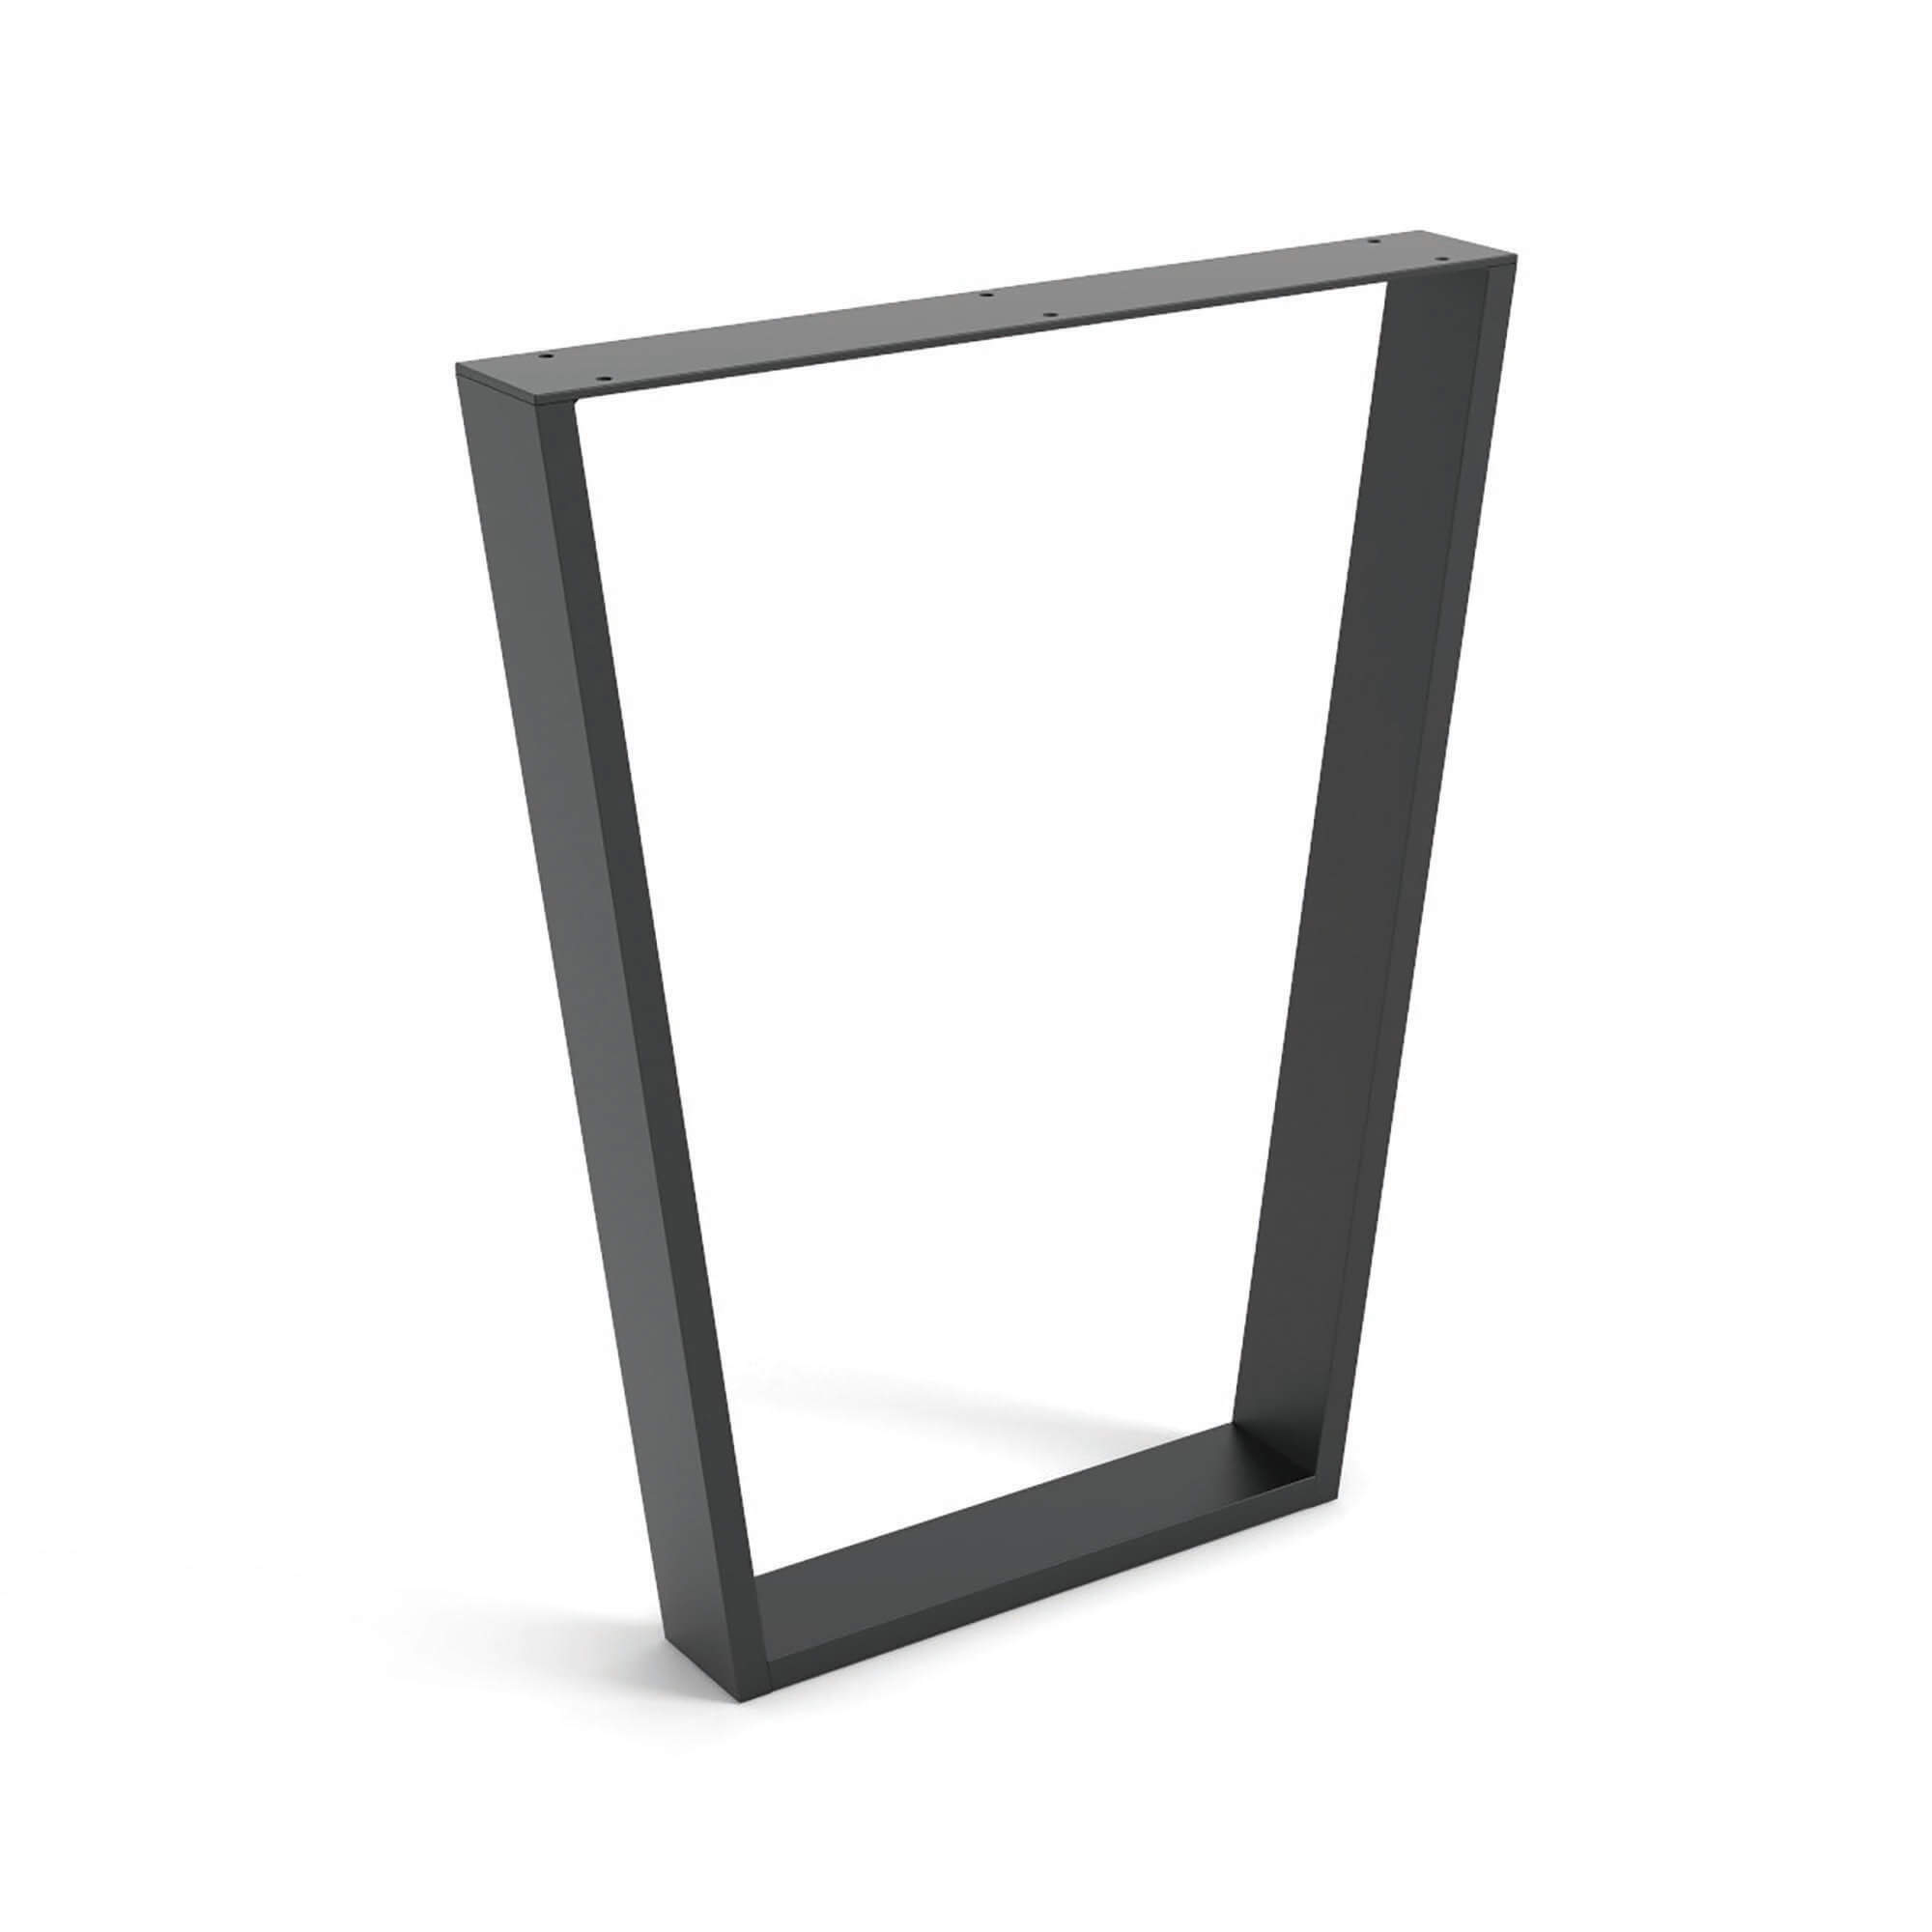 Pied industriel pour meuble Fabriqué en acier Finition pores noirs | Dimensions 580*80*712mm | Hauteur : 71,2 cm | 1 unité